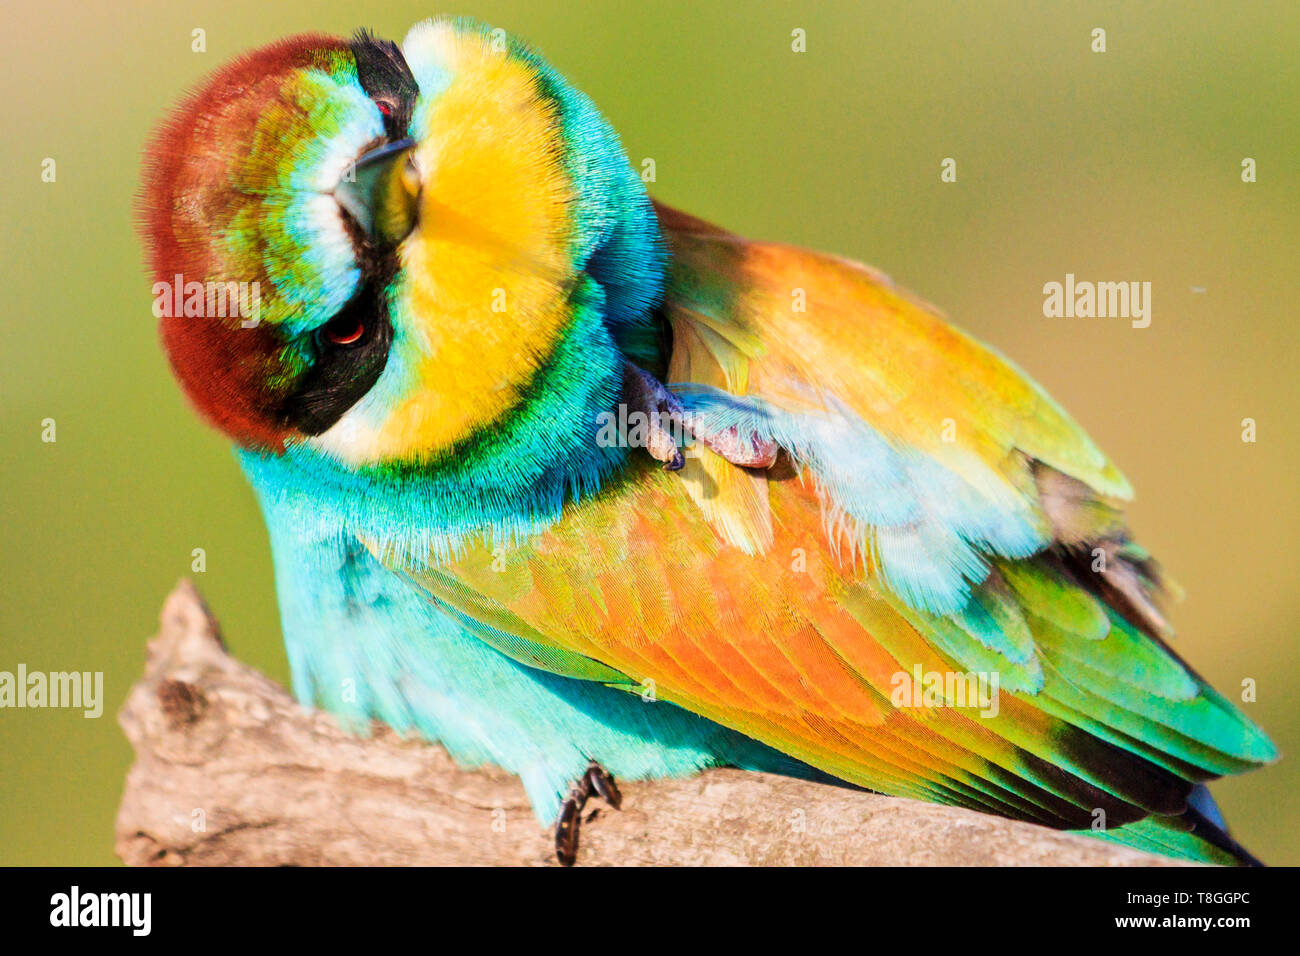 Hocico peludo lindo pájaros coloridos Foto de stock